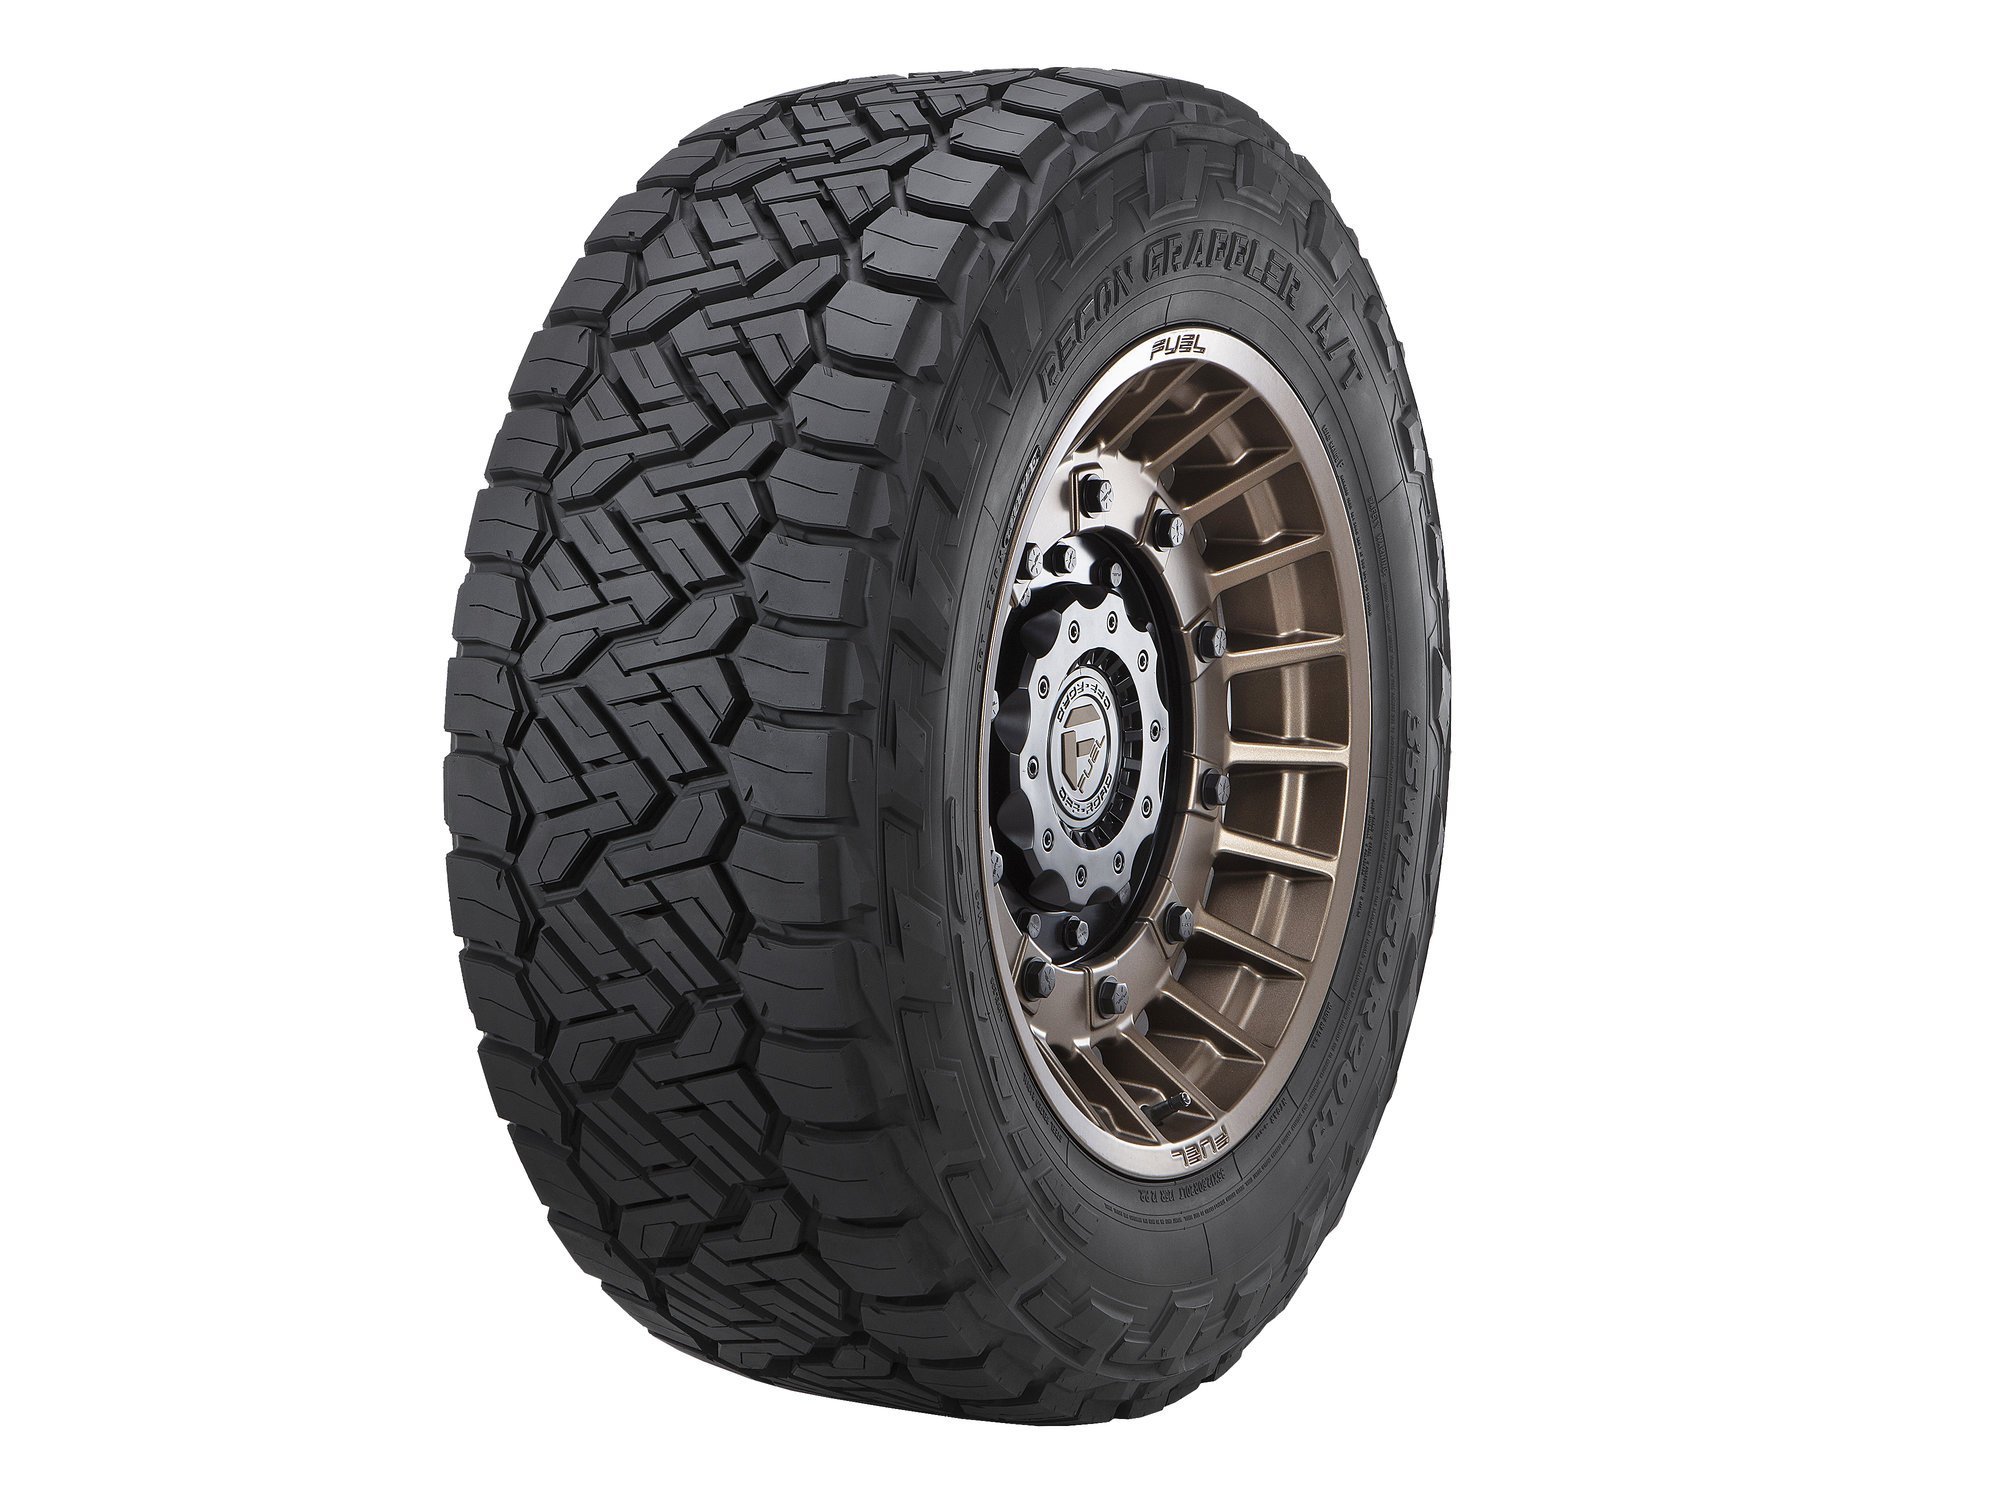 Nitto Recon Grappler Tire In 35x1250r17lt Quadratec